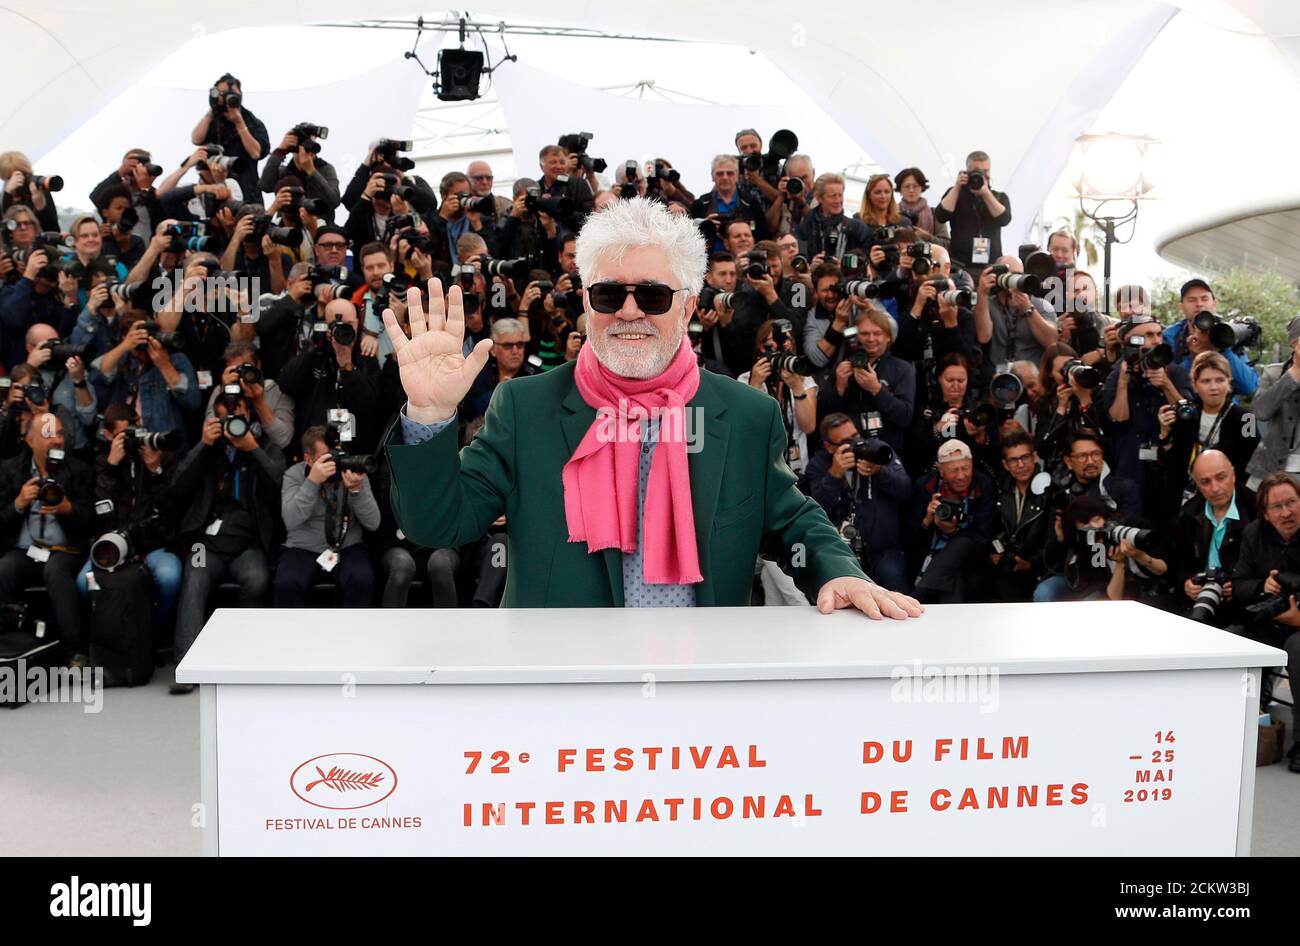 72e Festival de Cannes - Photocall pour le film "douleur et gloire" (Dolor y Gloria) en compétition - Cannes, France, 18 mai 2019. Le directeur Pedro Almodovar pose. REUTERS/Eric Gaillard Banque D'Images